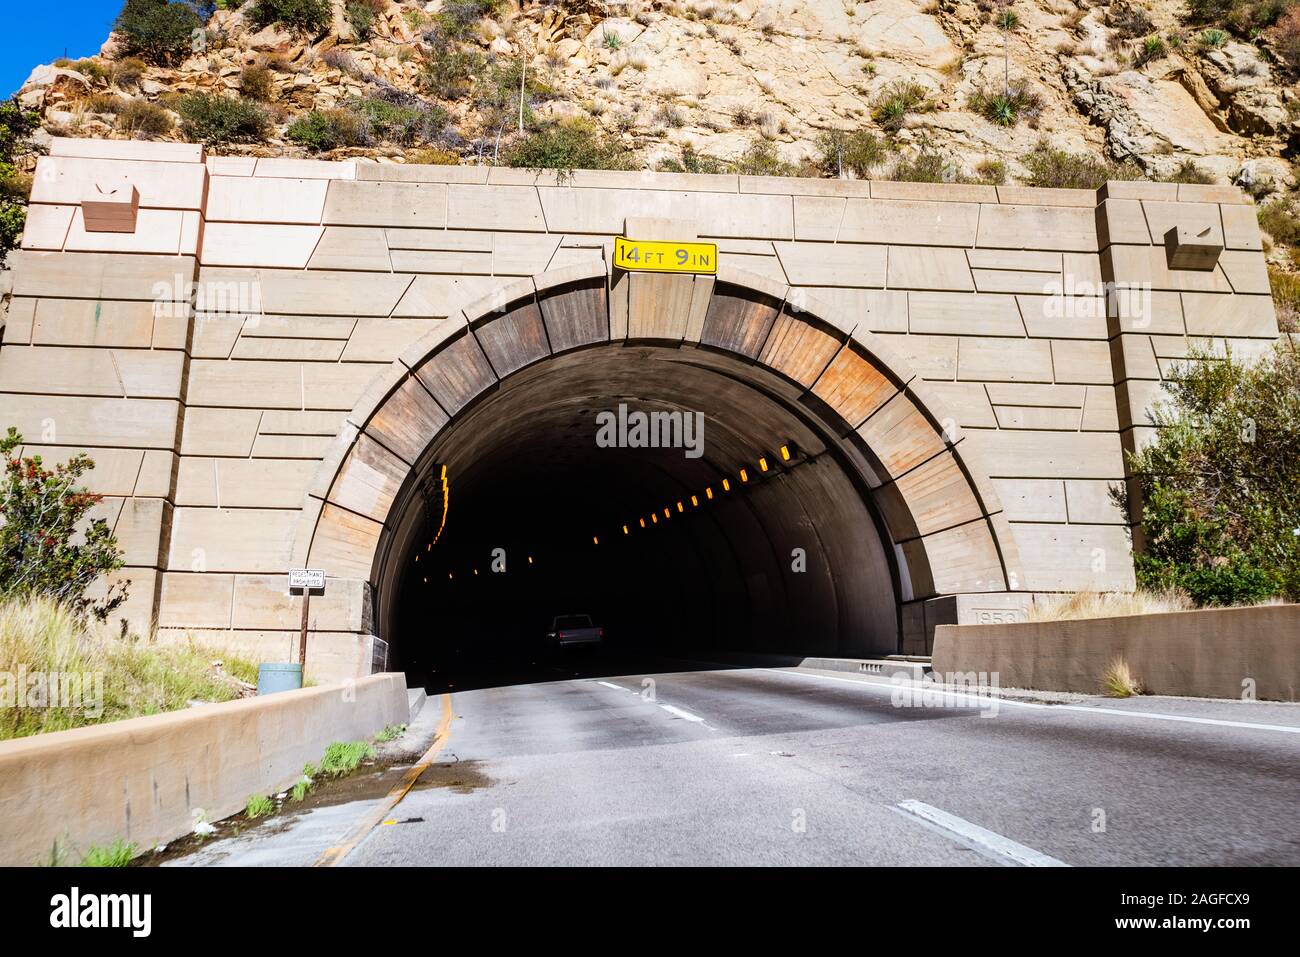 Túnel excavado en una montaña en la autopista 1, California; altura máxima mostrada en la entrada; la autopista bifurcación izquierda debido a la curva de carretera Foto de stock